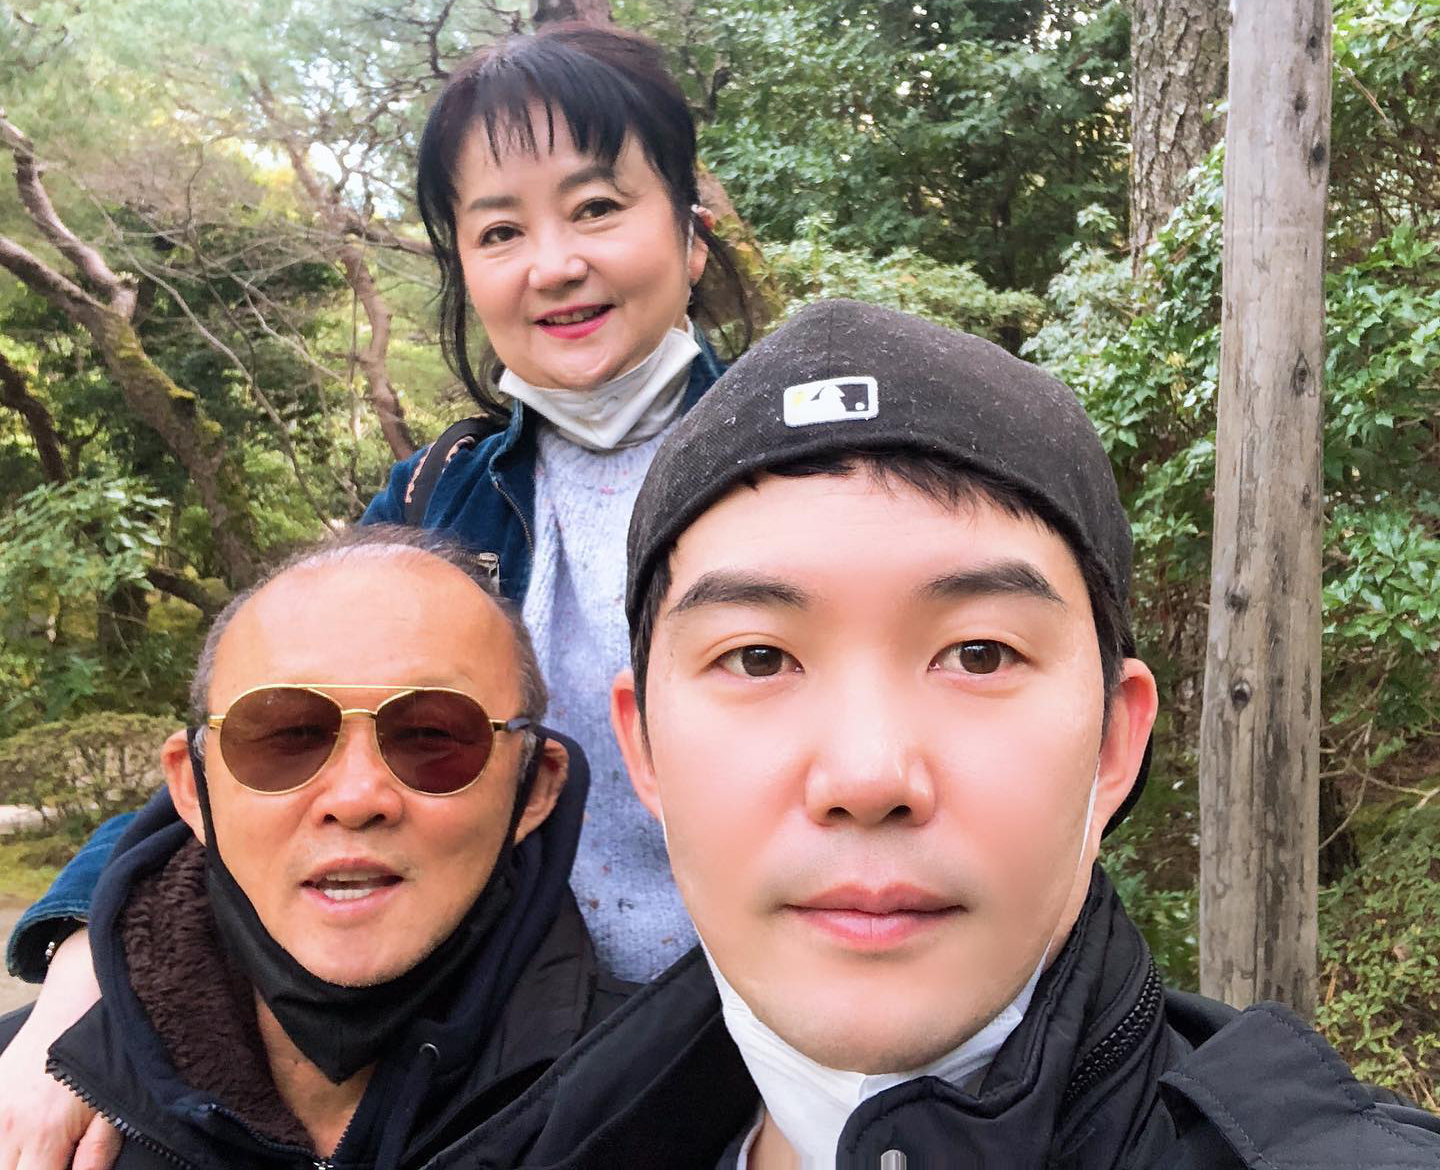 HLV Park Hang Seo và hôn nhân đẹp - bền - uy tín với bà xã-5